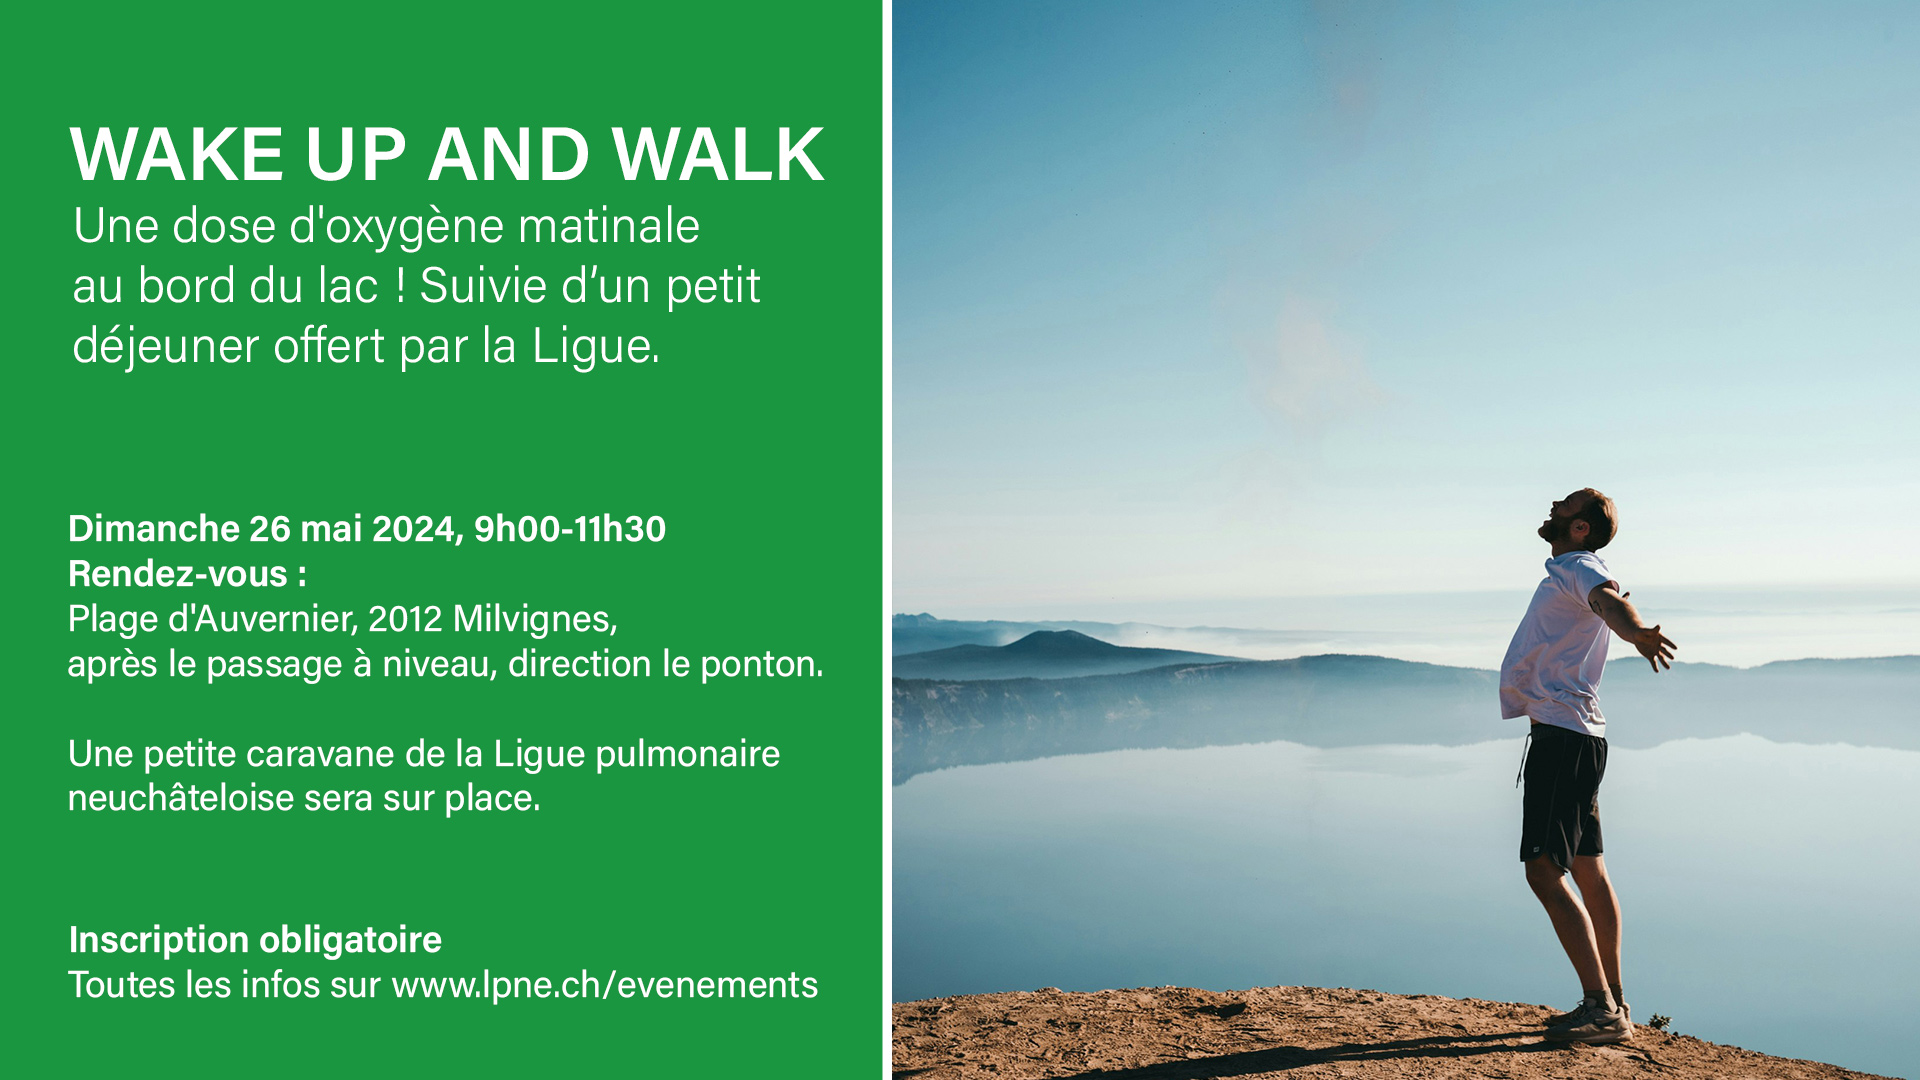 Wake up and walk au bord du lac